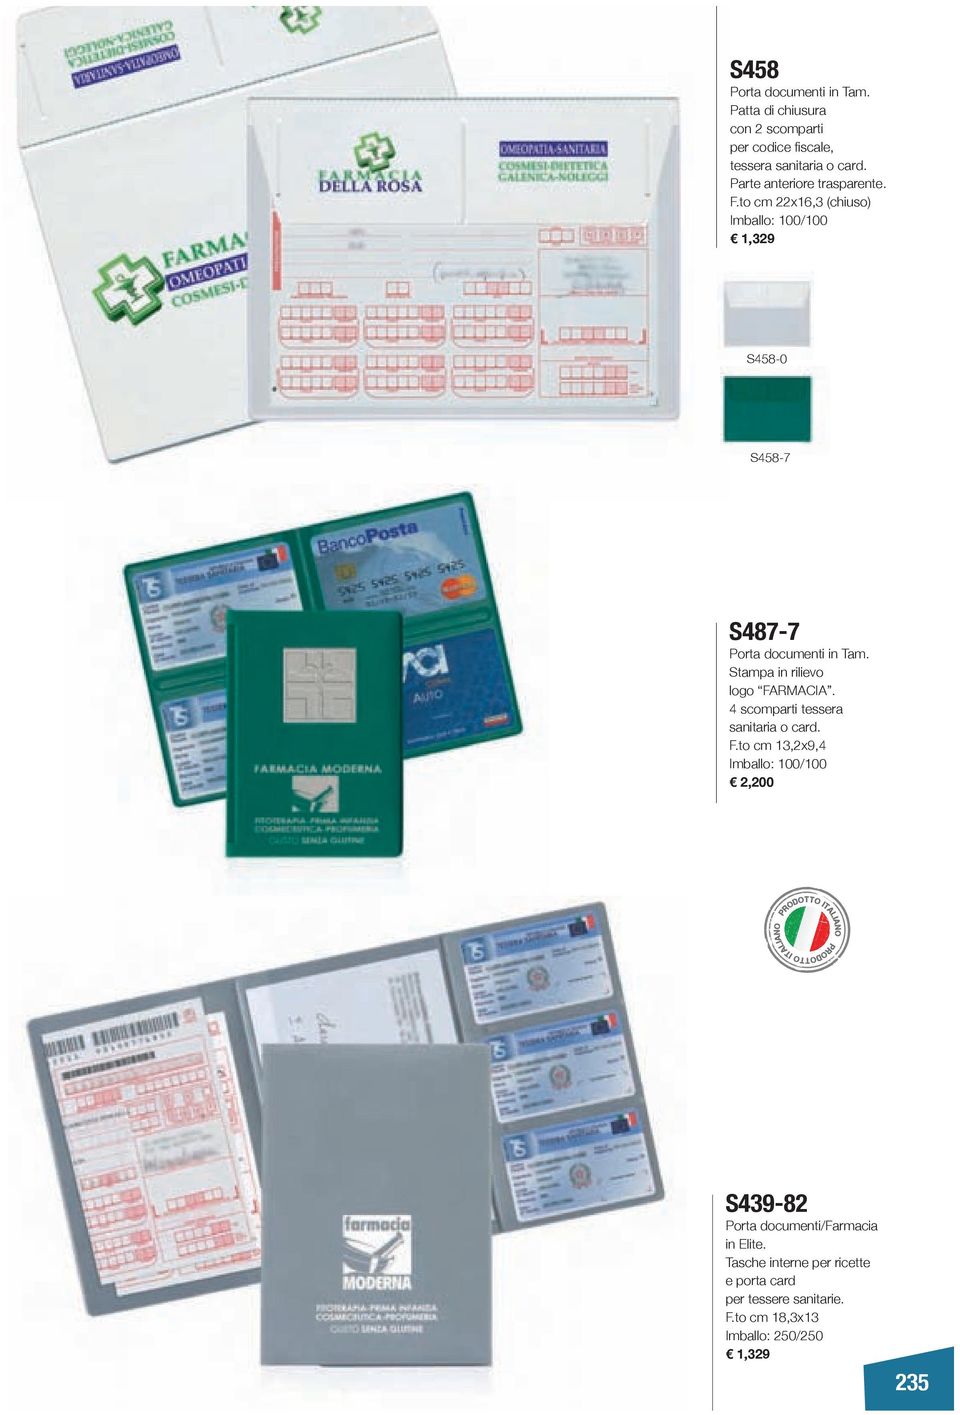 Stampa in rilievo logo FARMACIA. 4 scomparti tessera sanitaria o card. F.to cm 13,2x9,4 Imballo: 100/100 2,200 S439-82 Porta documenti/farmacia in Elite.